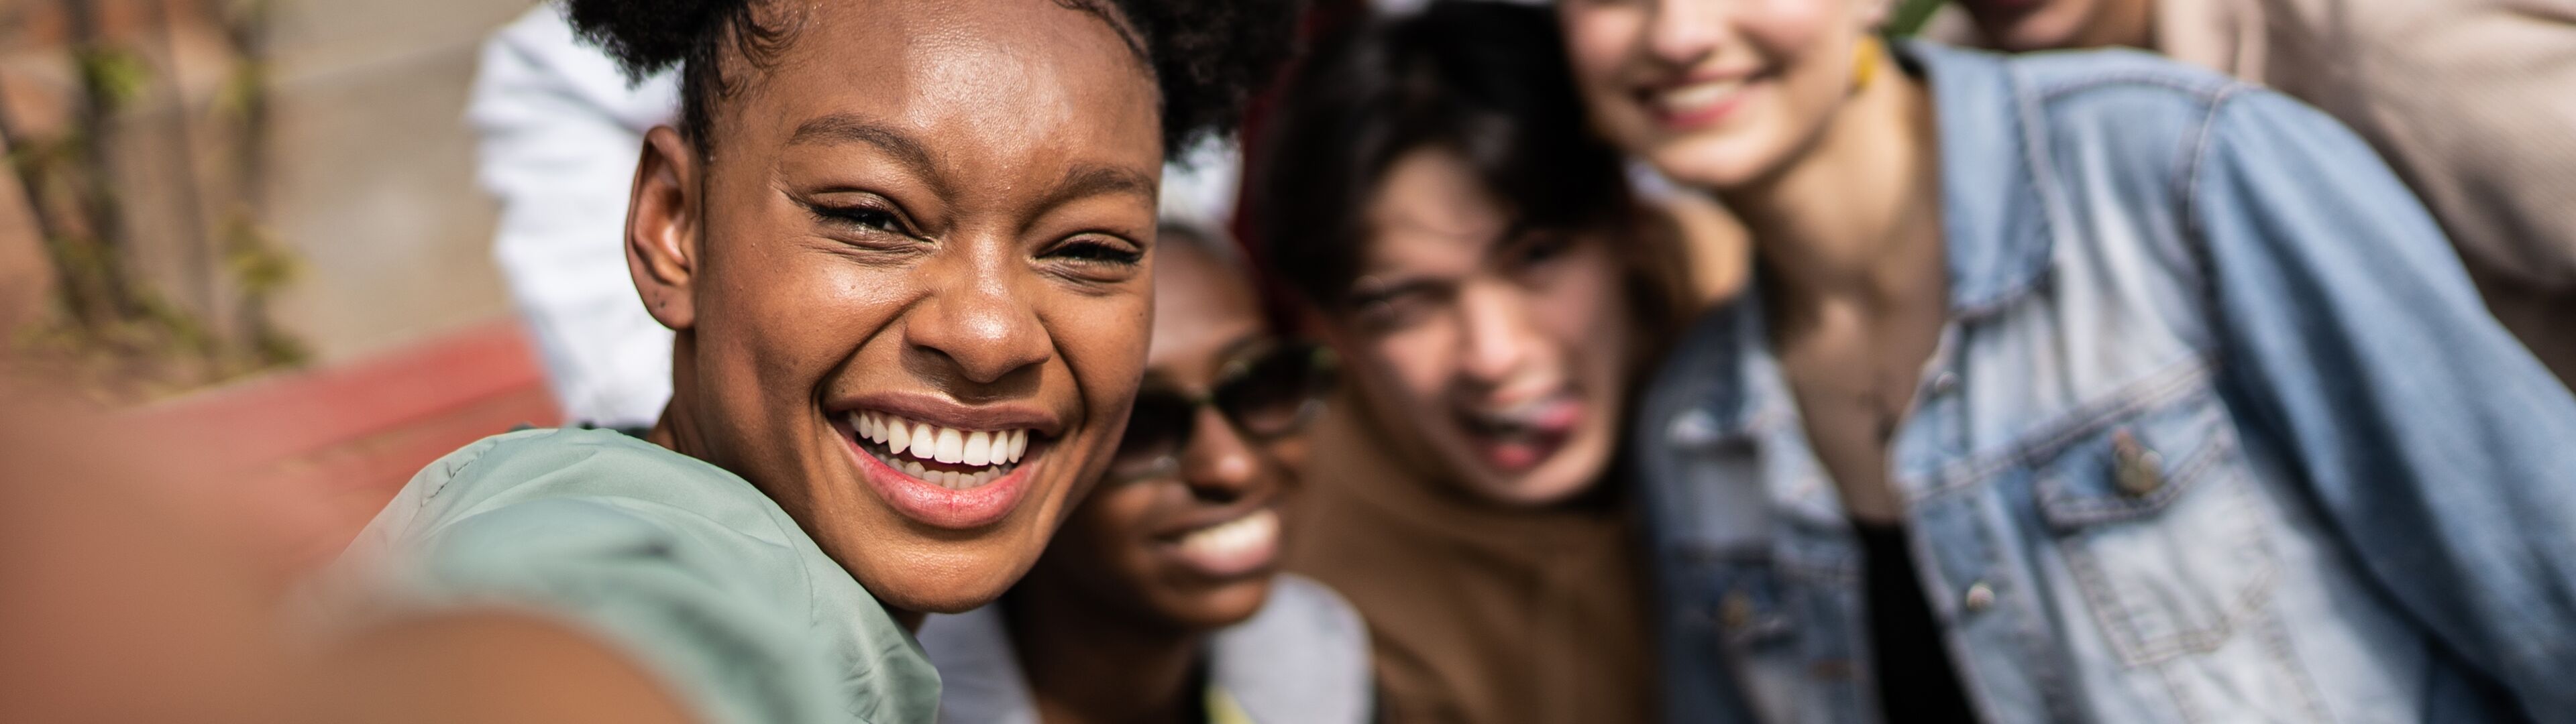 Un selfie grupal vibrante con una joven en primer plano y amigos de varias etnias sonriendo detrás.